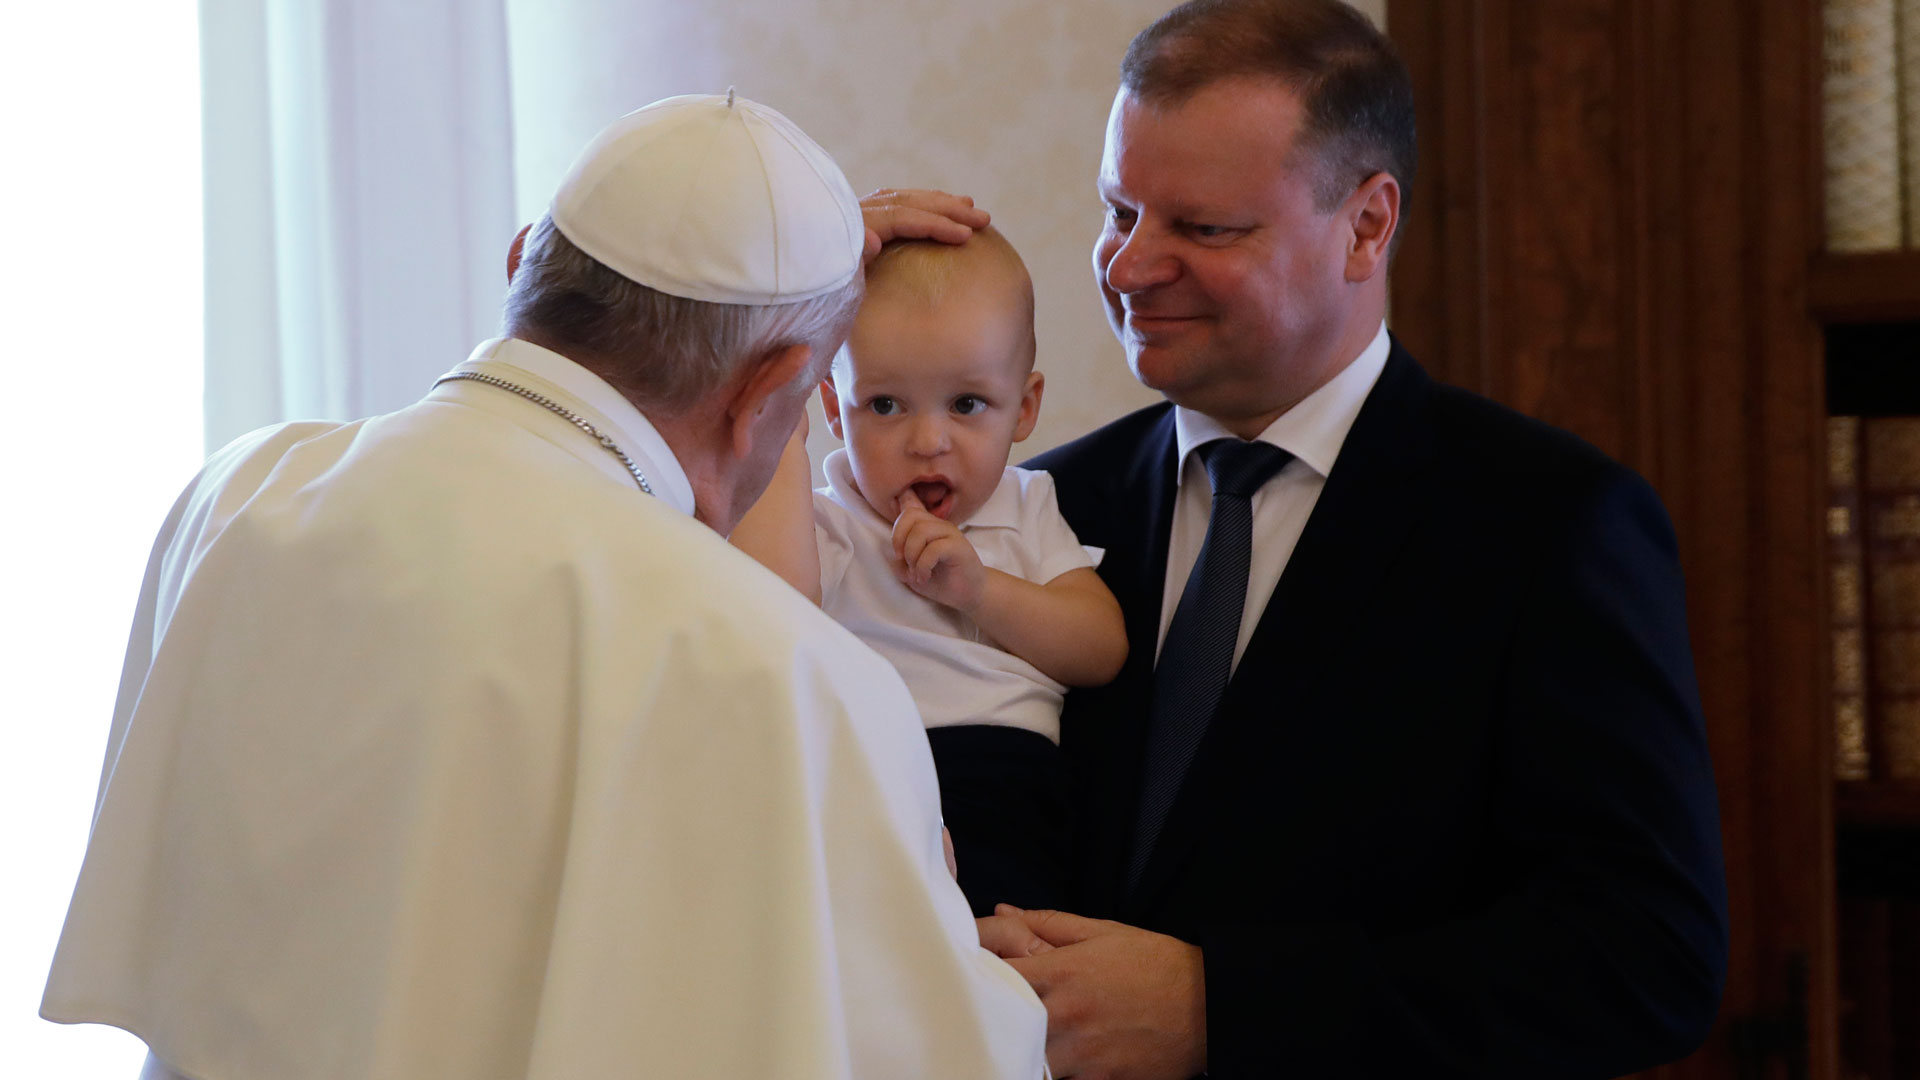 El Papa Francisco pide apoyo para proteger a los menores de los abusos sexuales